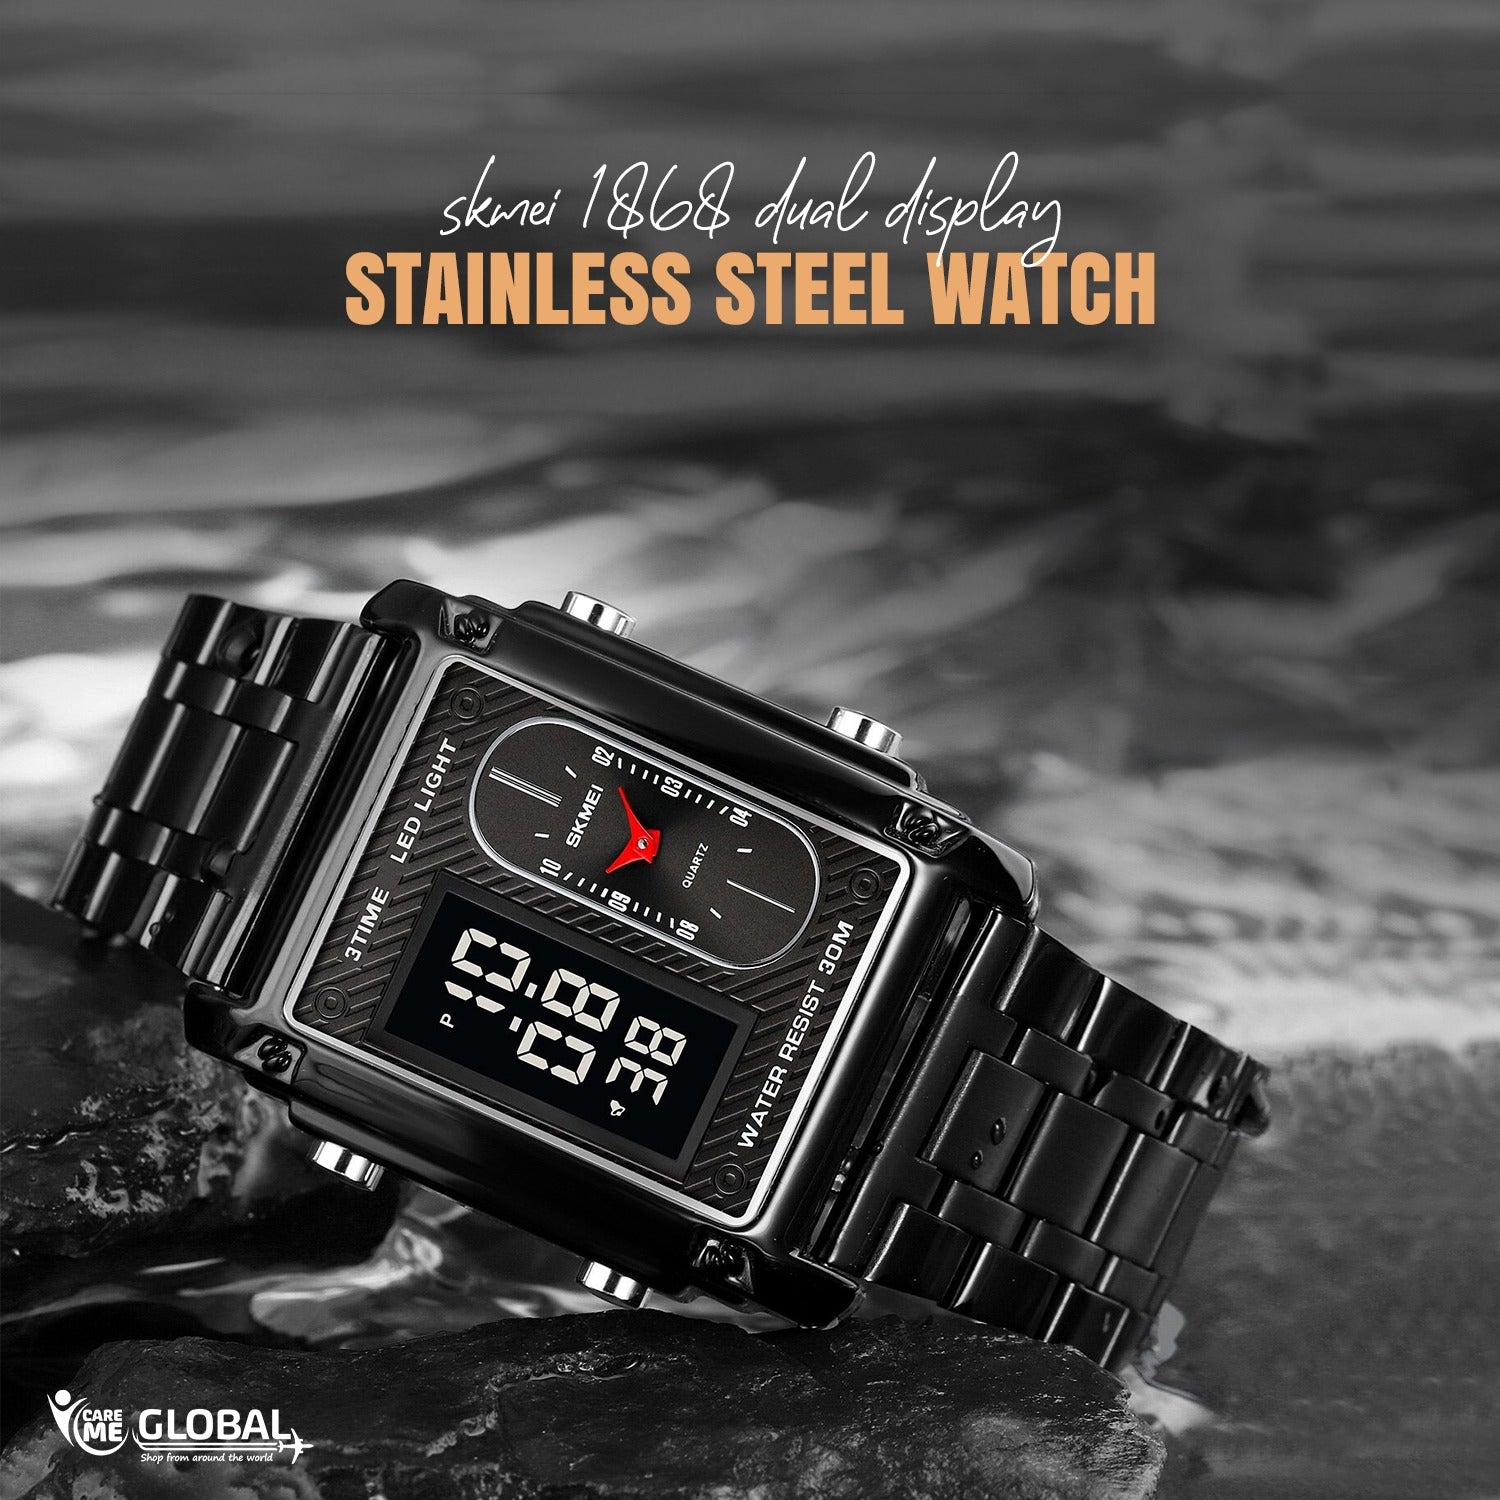 SKMEI Waterproof Electronic Dual Display Stainless Steel Watch